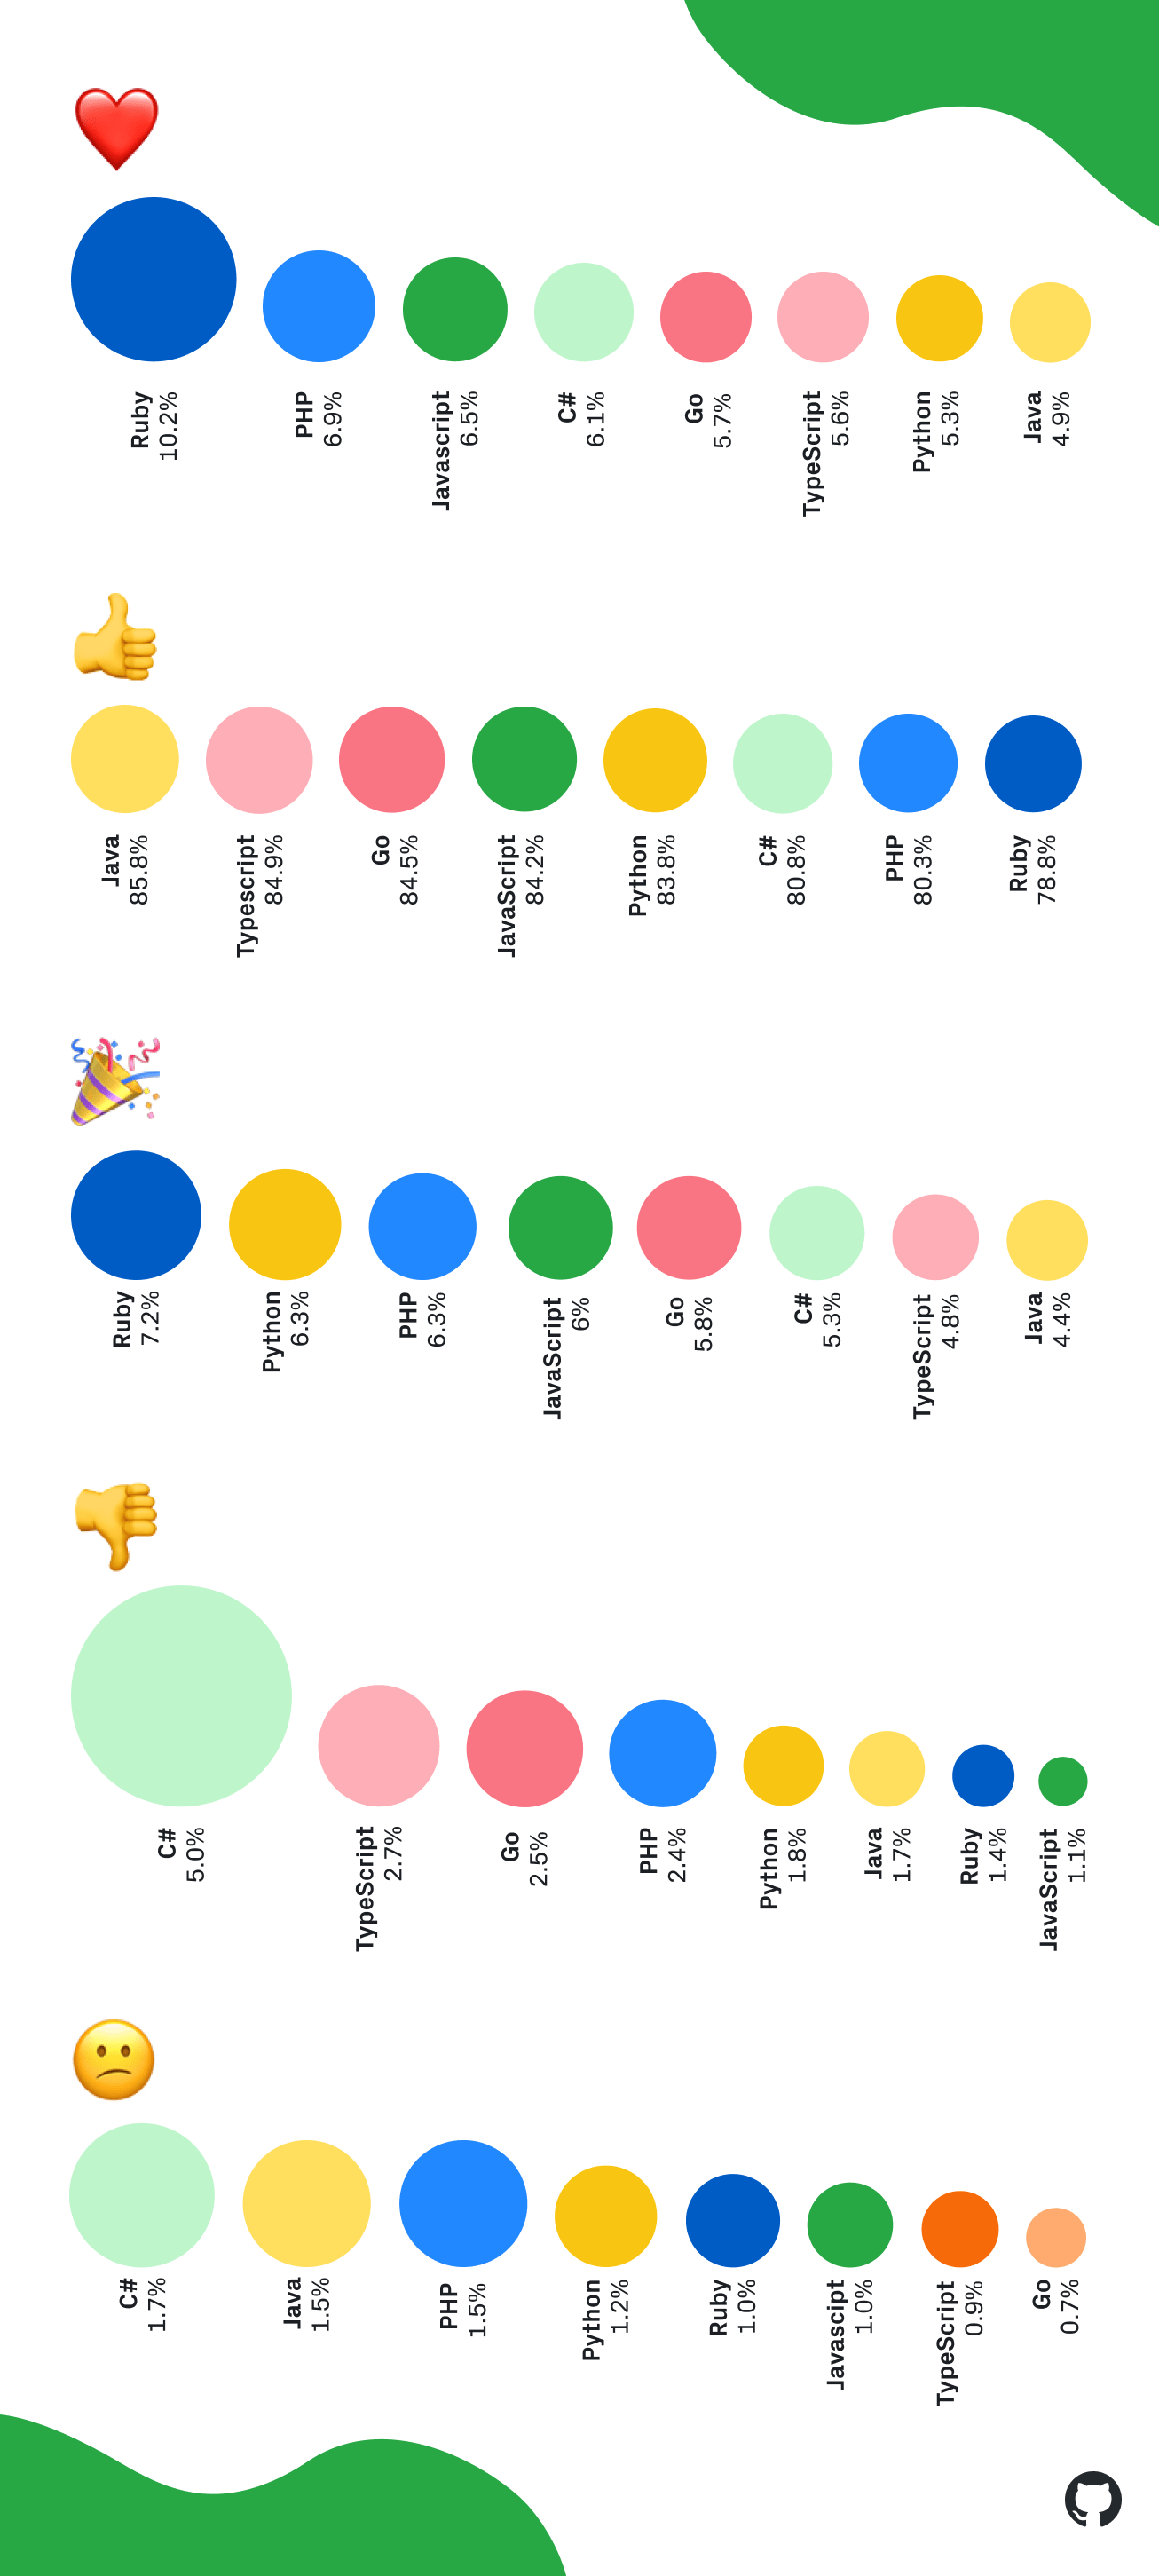 Emoji usage by programming language